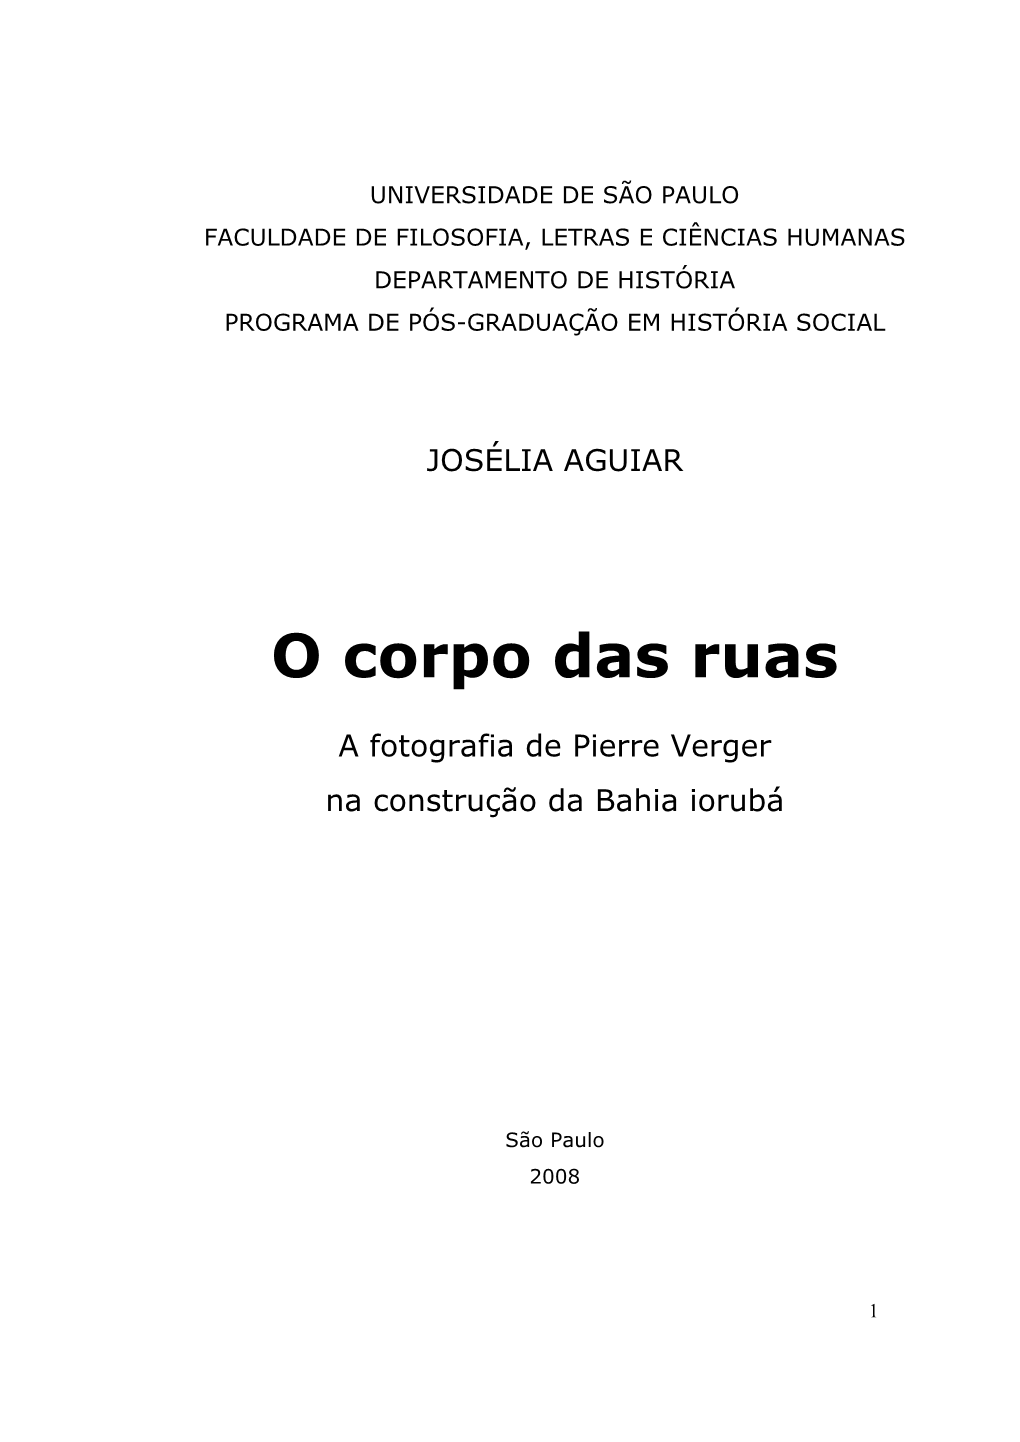 O Corpo Das Ruas: a Fotografia De Pierre Verger Na Construção Da Bahia Iorubá